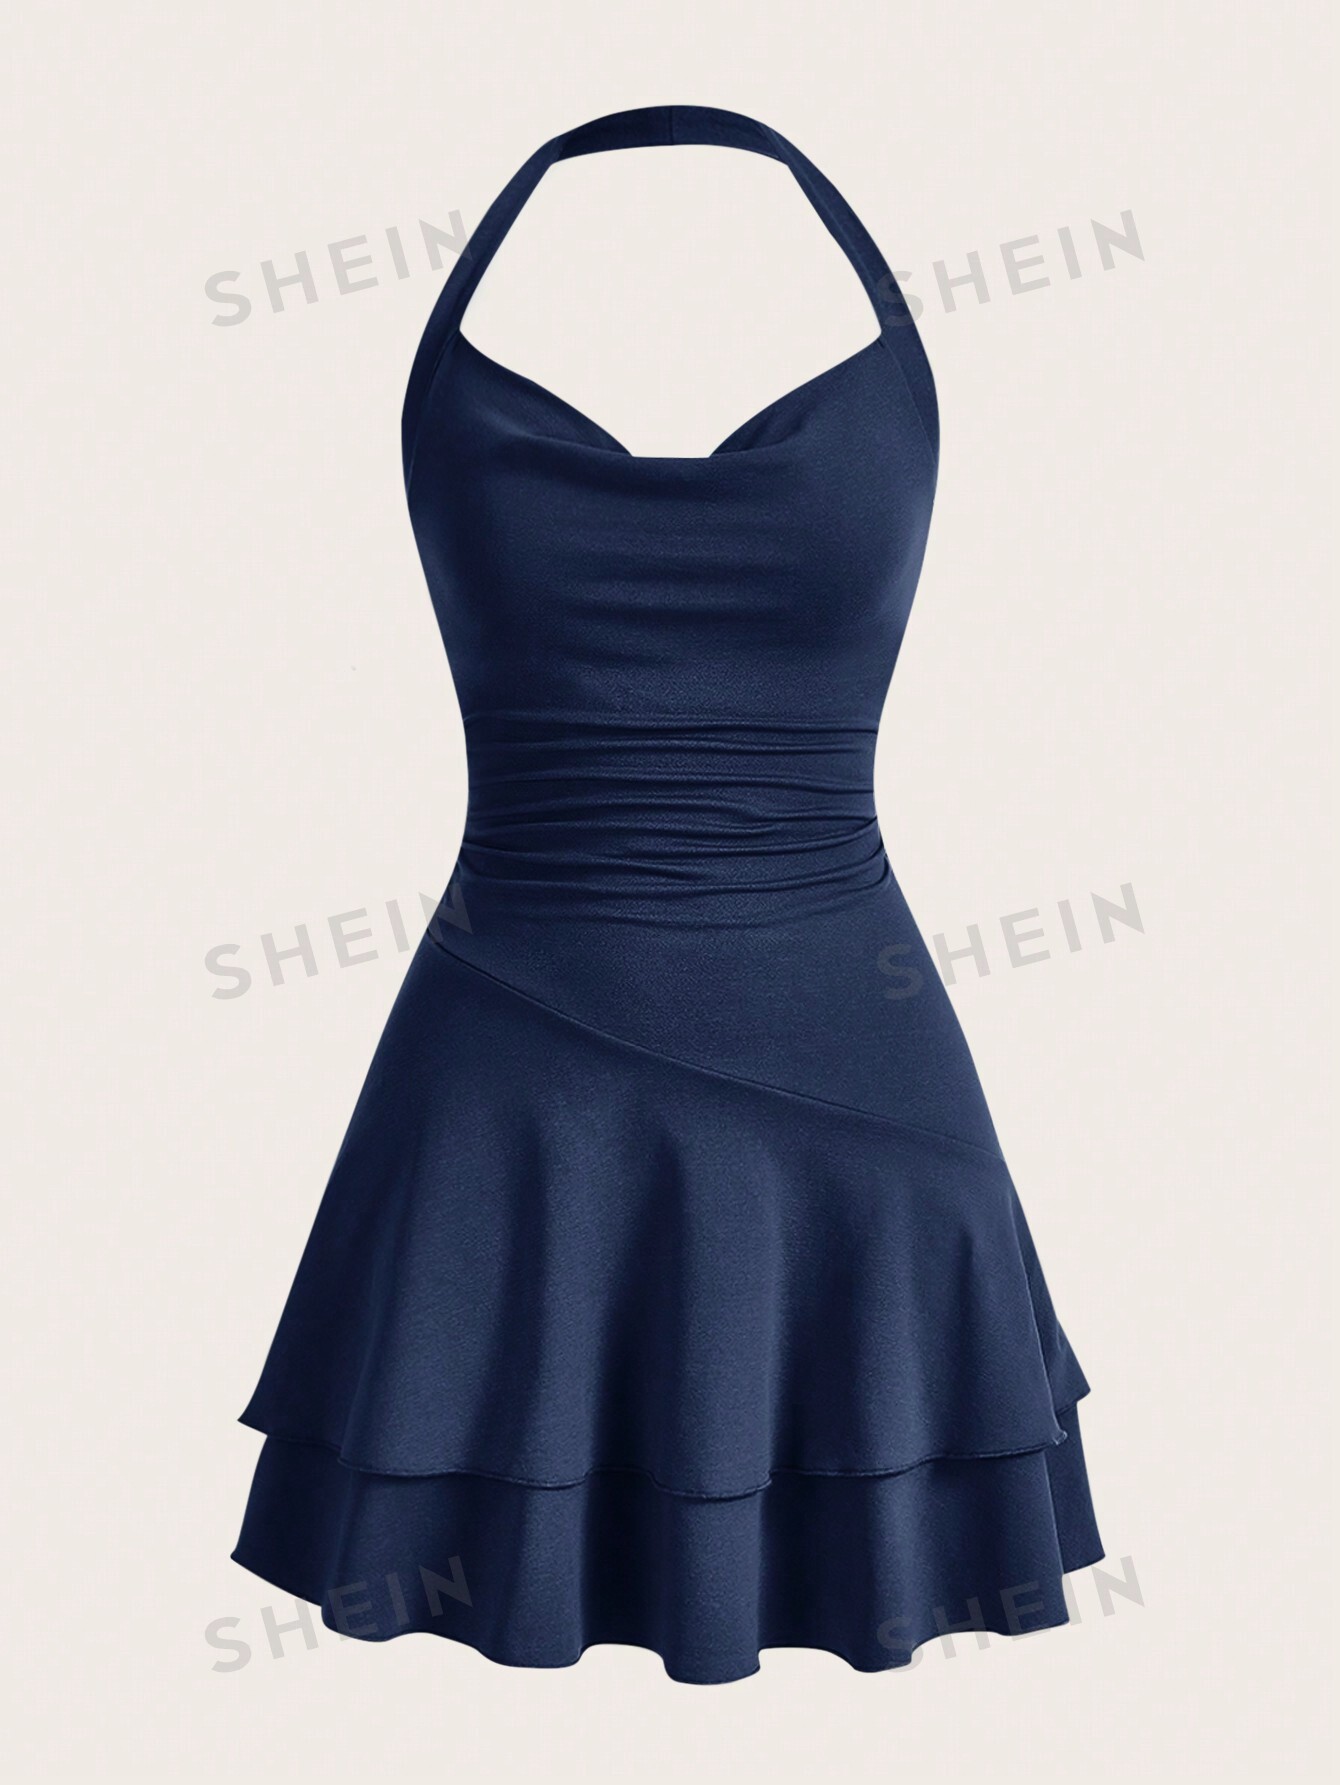 вязаное облегающее платье миди из хлопка цвет – голубой SHEIN MOD однотонное женское платье с бретелькой на шее и многослойным подолом, темно-синий